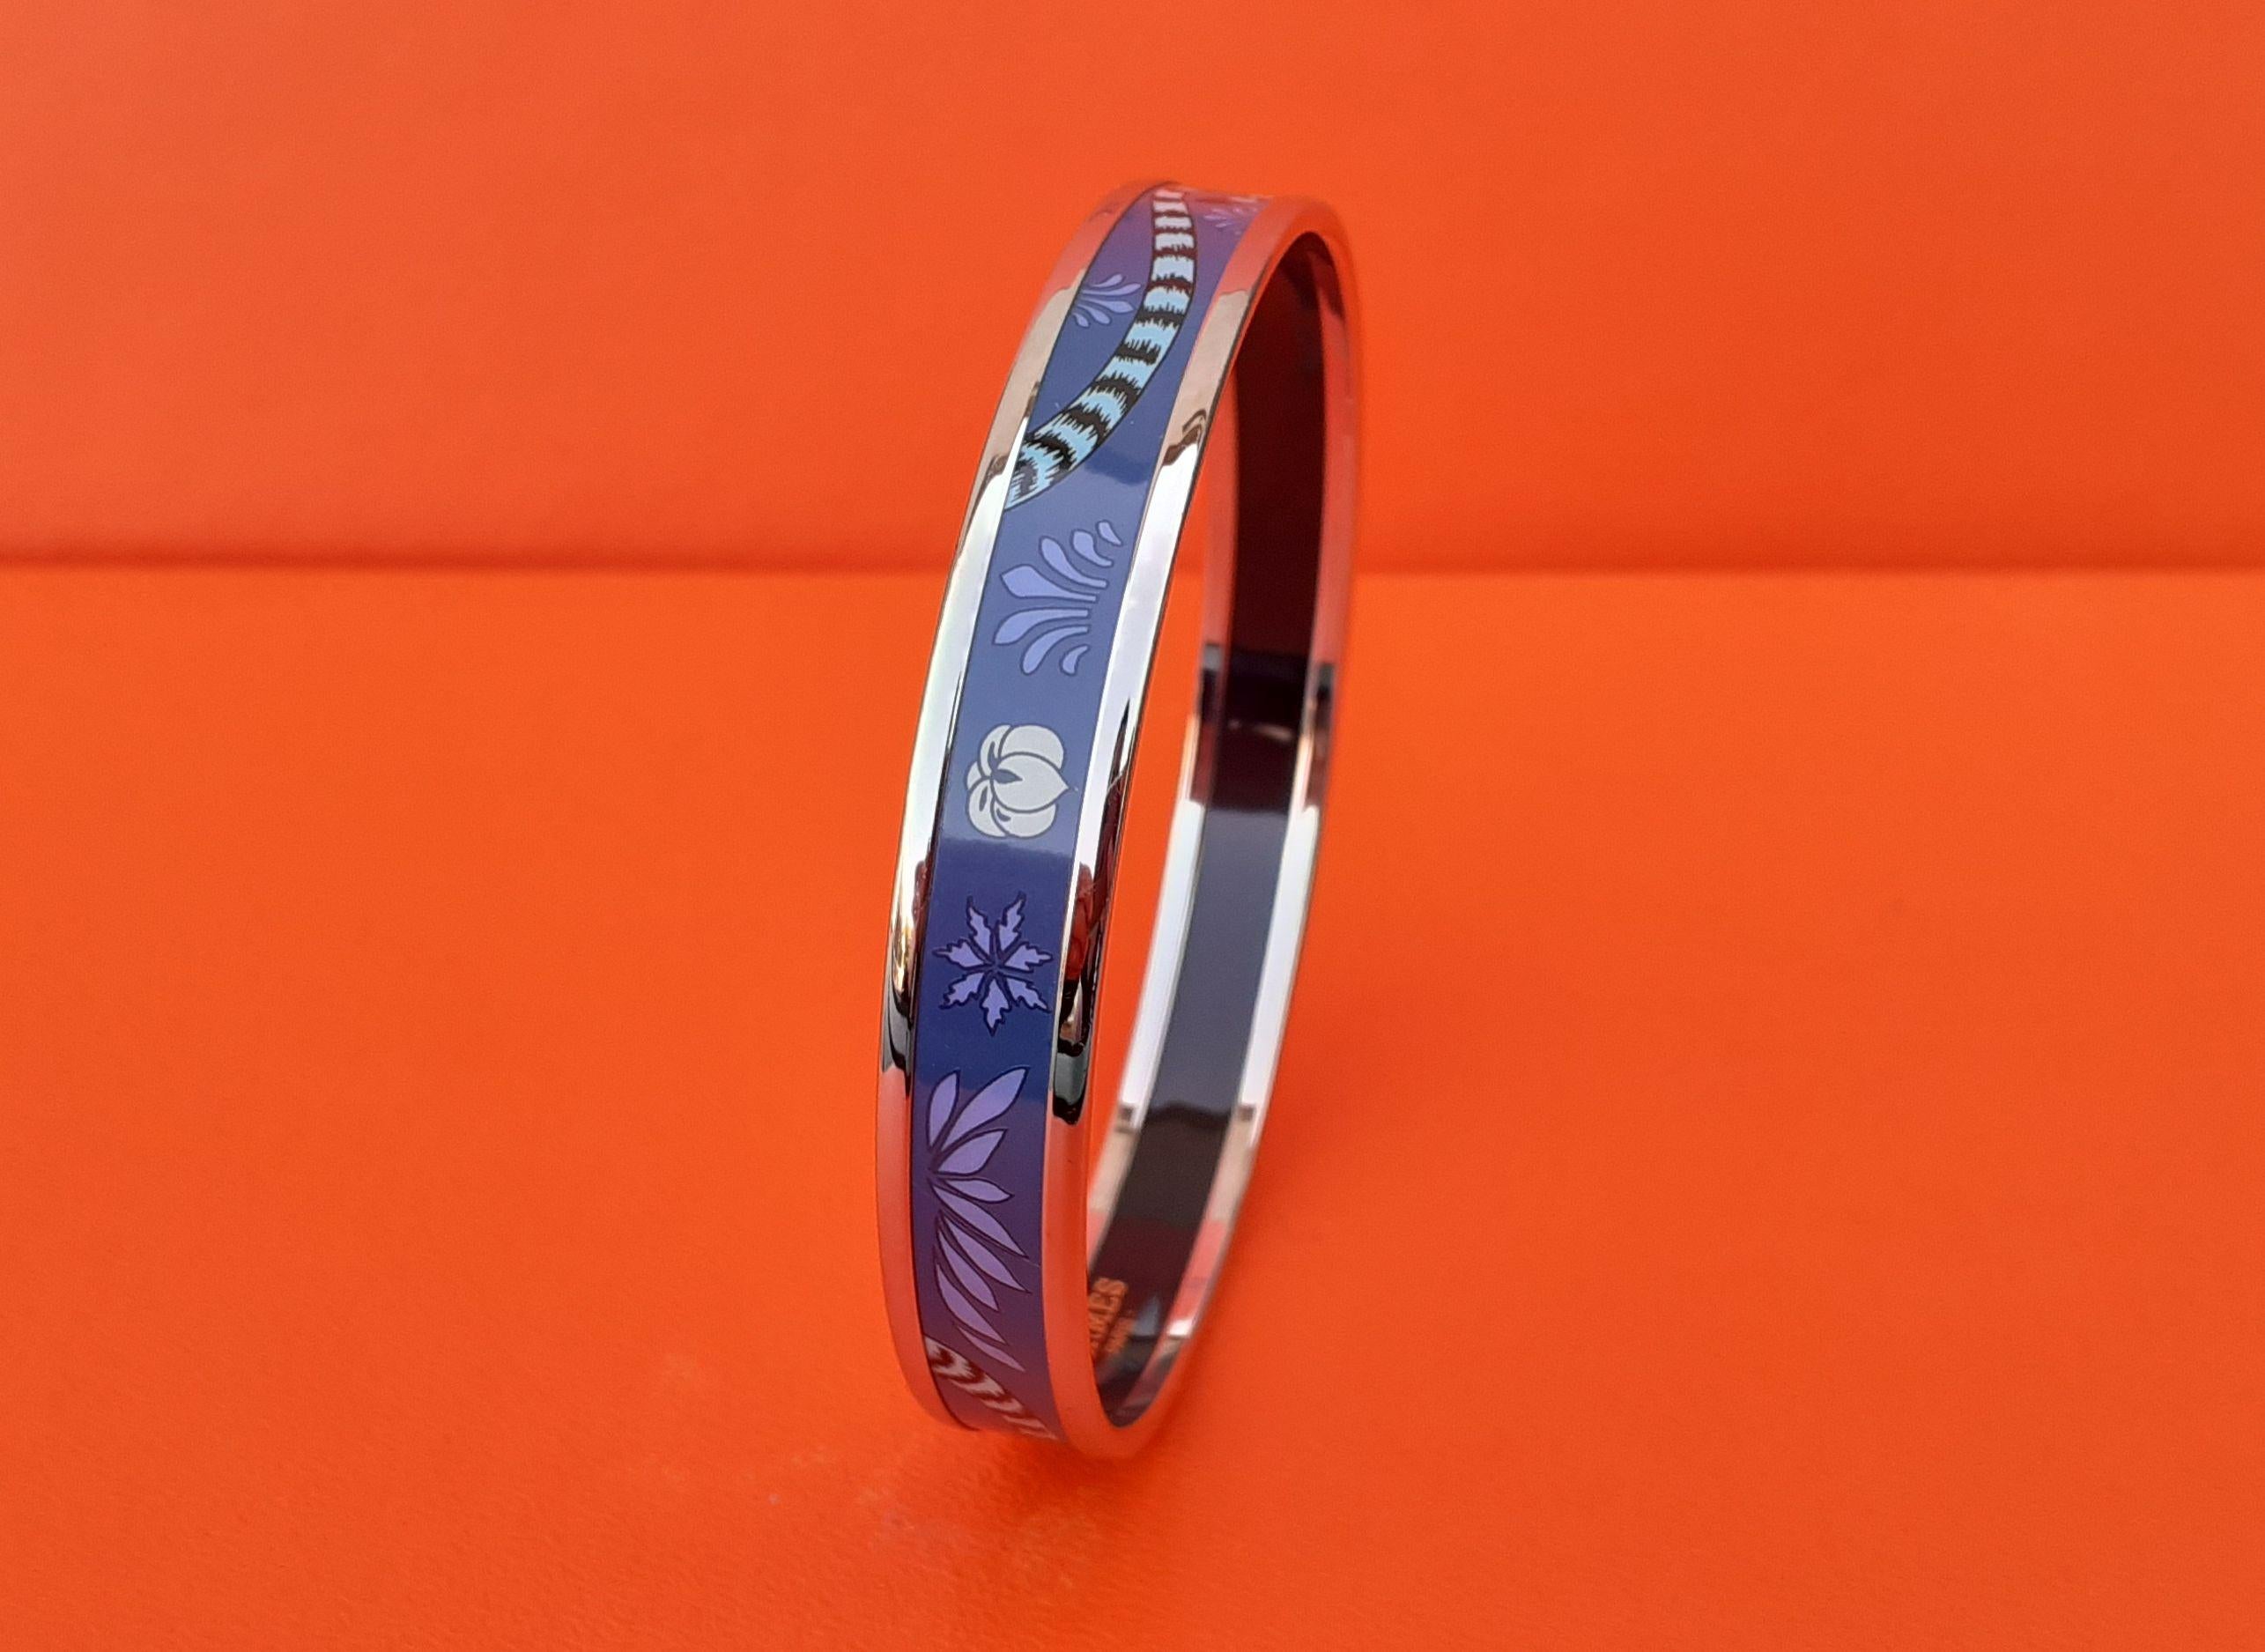 Magnifique bracelet Hermès authentique 

Motif : Léopards 

